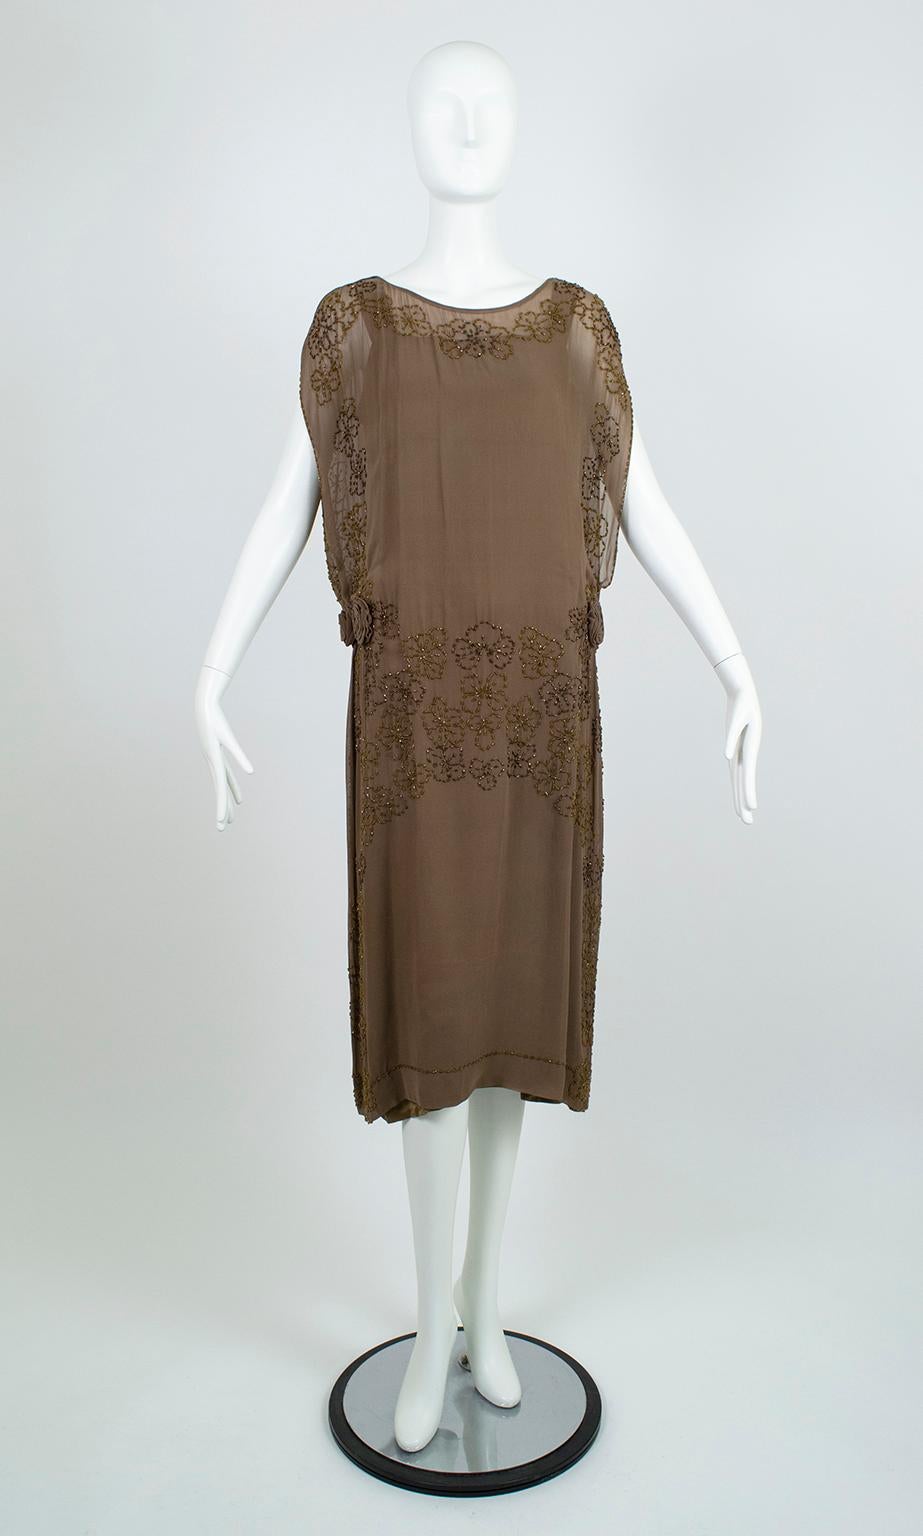 Provenant de la succession de l'héritière des grands magasins Estela Jácome, cette robe exceptionnelle du début des années 20 est l'exemple même d'une modestie séduisante. Malgré ses rosettes sensuelles au niveau des hanches, ses côtés tabard très